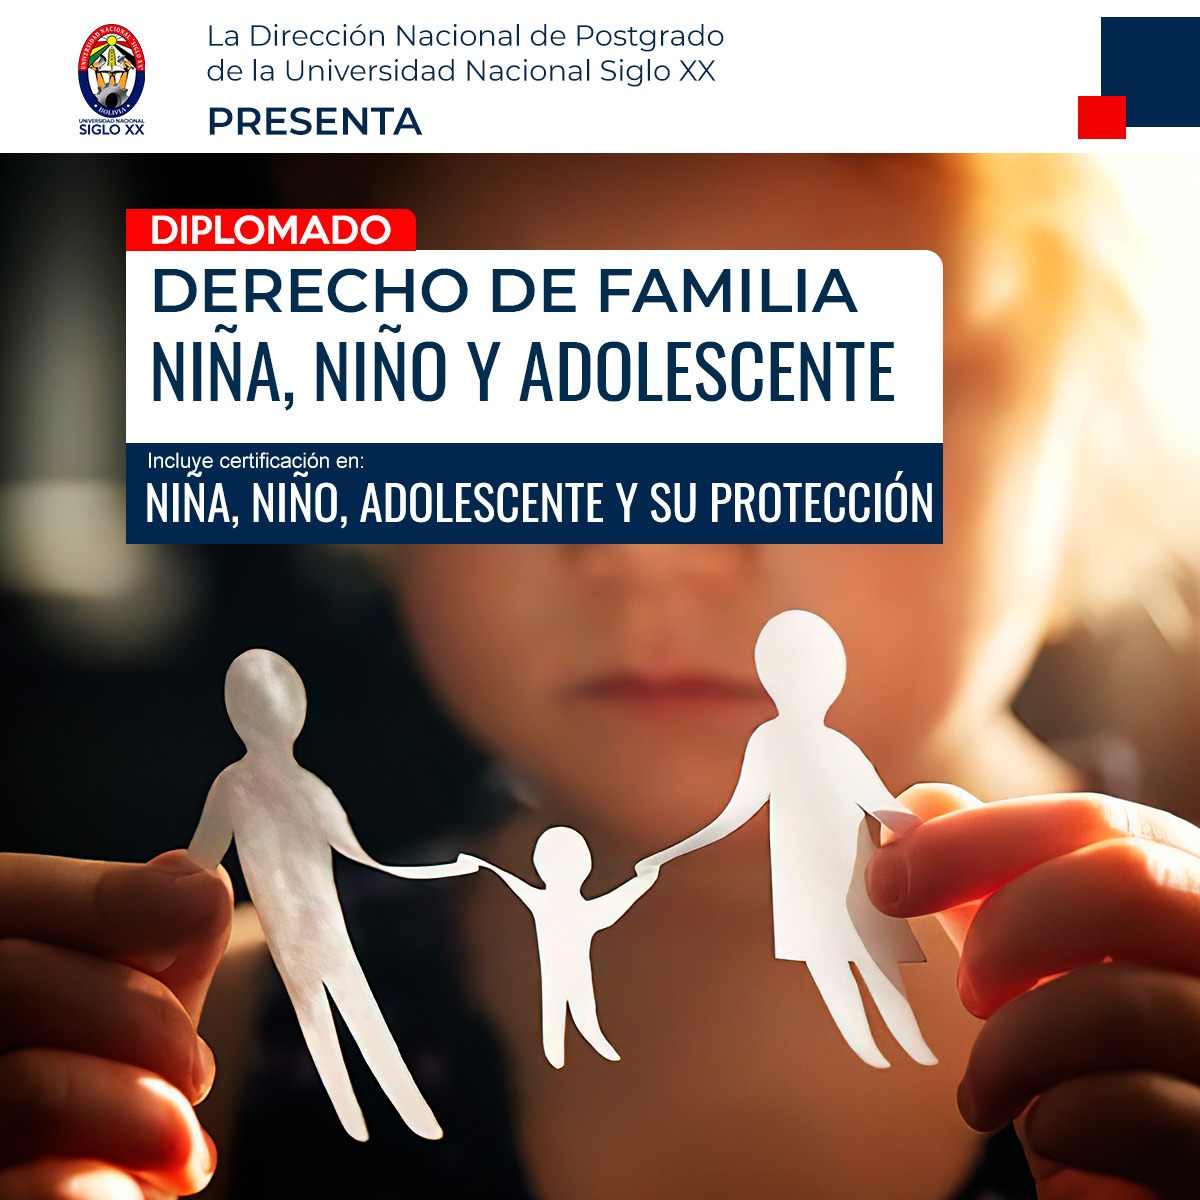 Diplomado DERECHO DE FAMILIA, NIÑA, NIÑO Y ADOLESCENTE